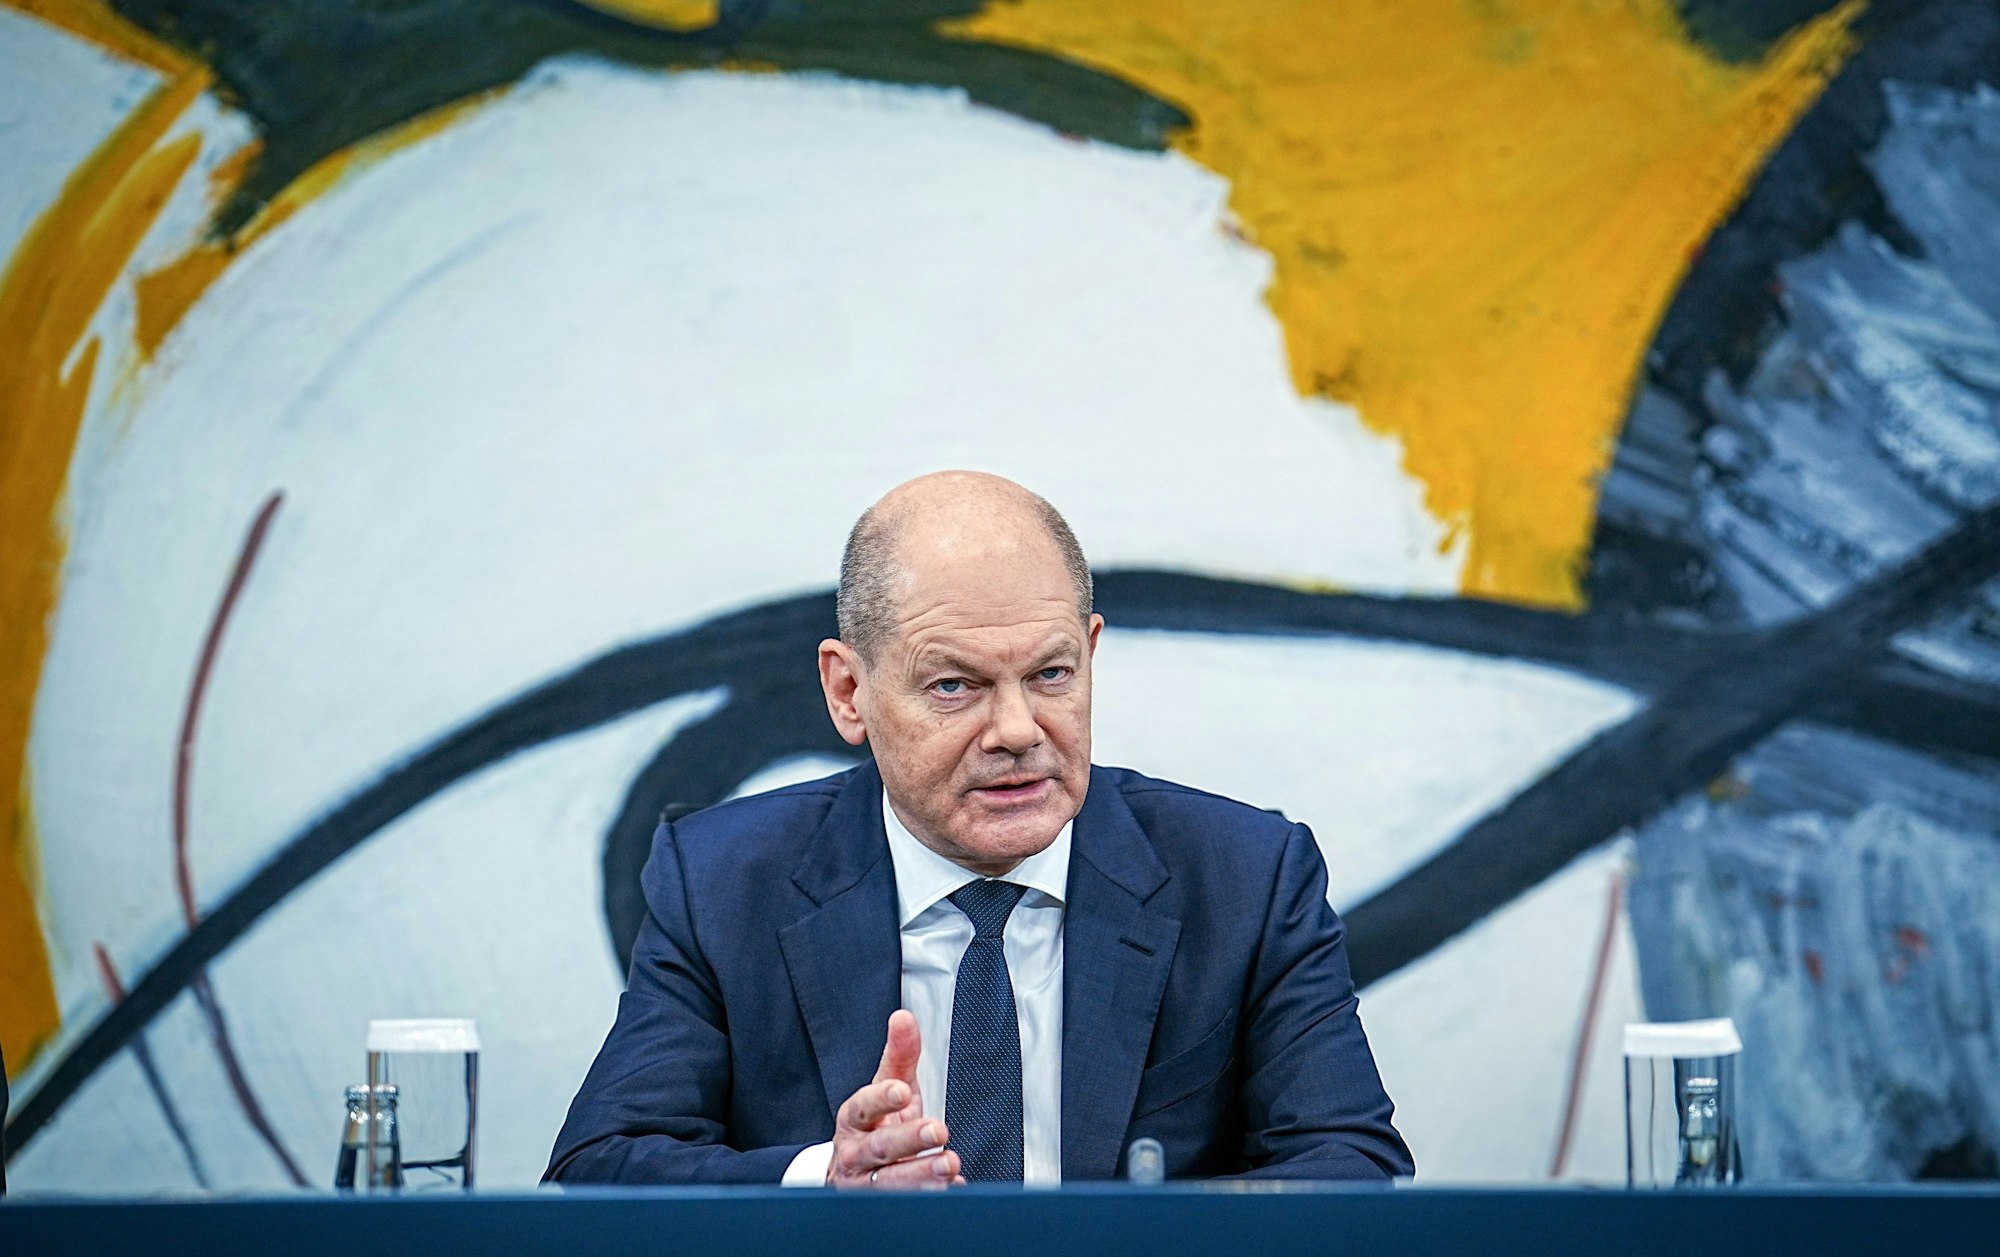 Bundeskanzler Olaf Scholz (SPD) gibt eine Pressekonferenz nach der Ministerpräsidentenkonferenz im Bundeskanzleramt.